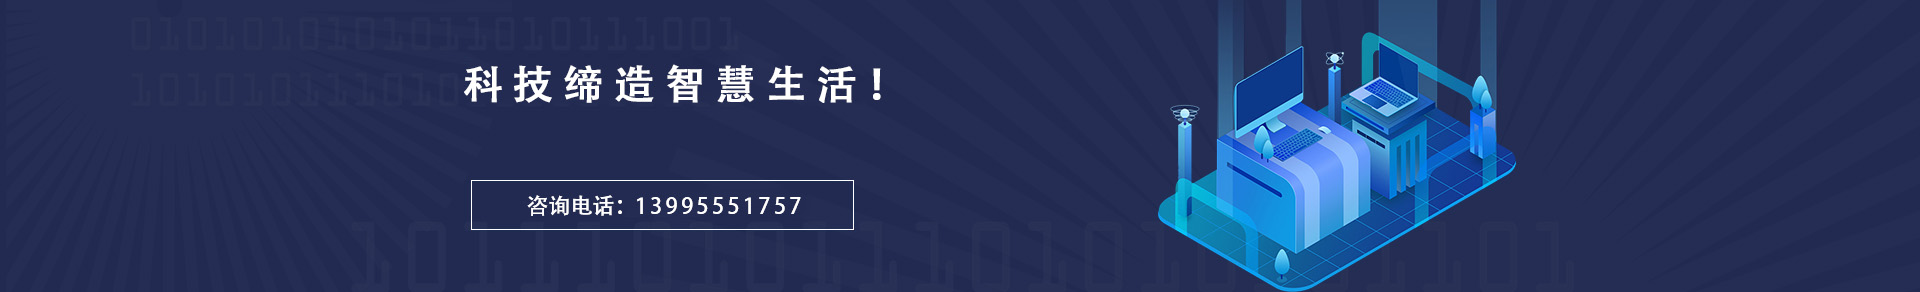 武汉8297至尊品牌游戏官方网站